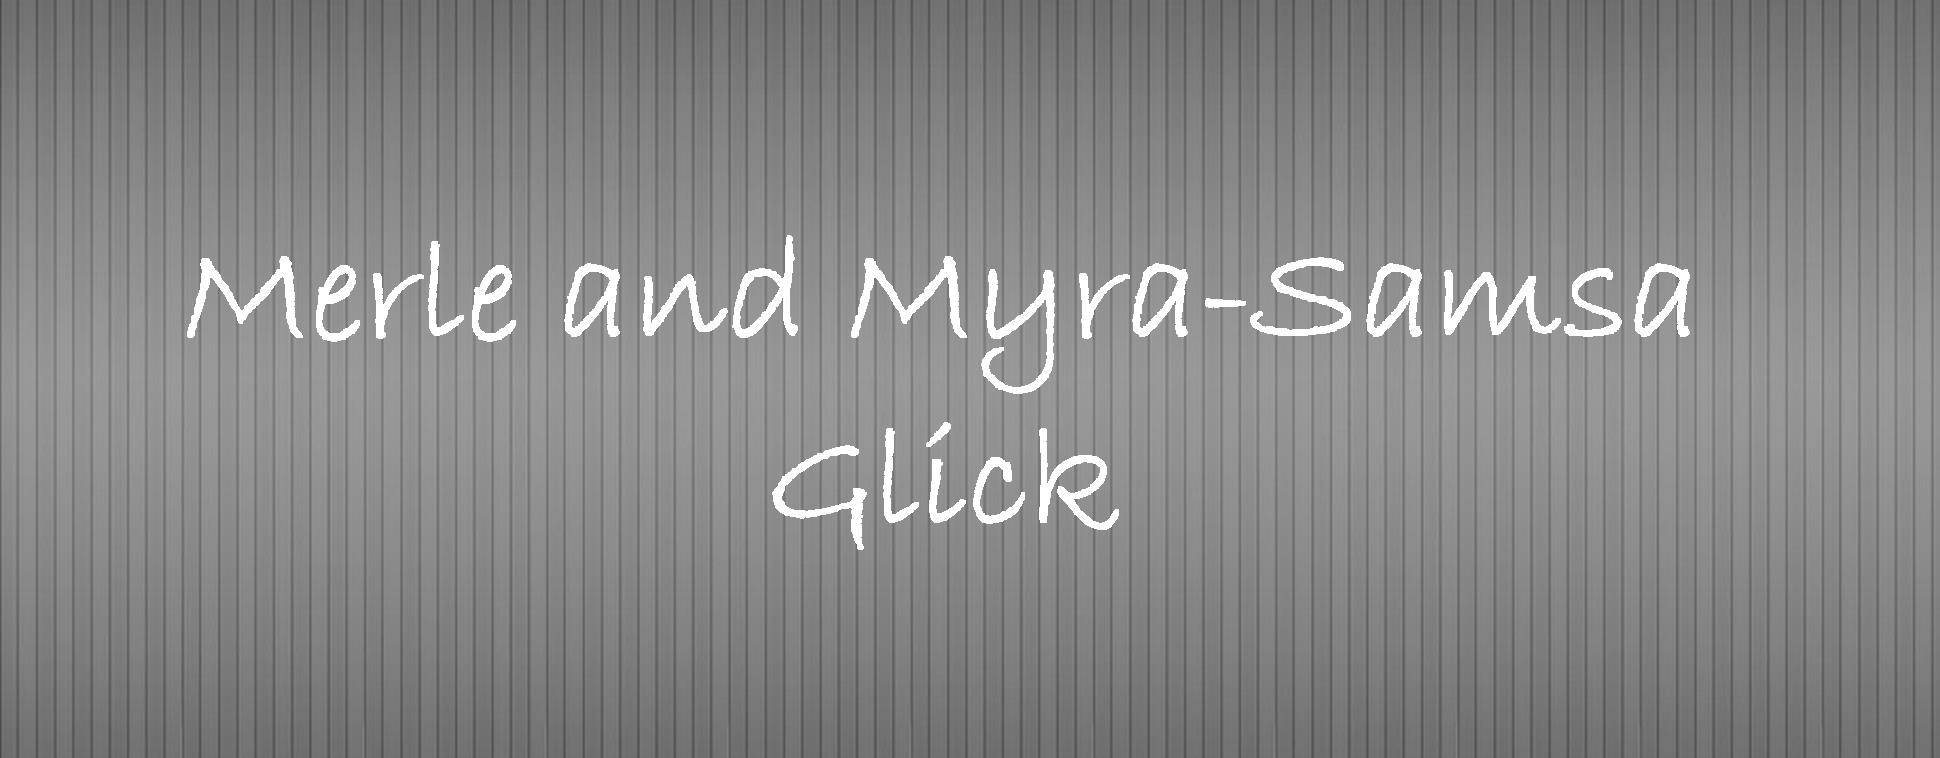 Merle and Myra Glick.jpg